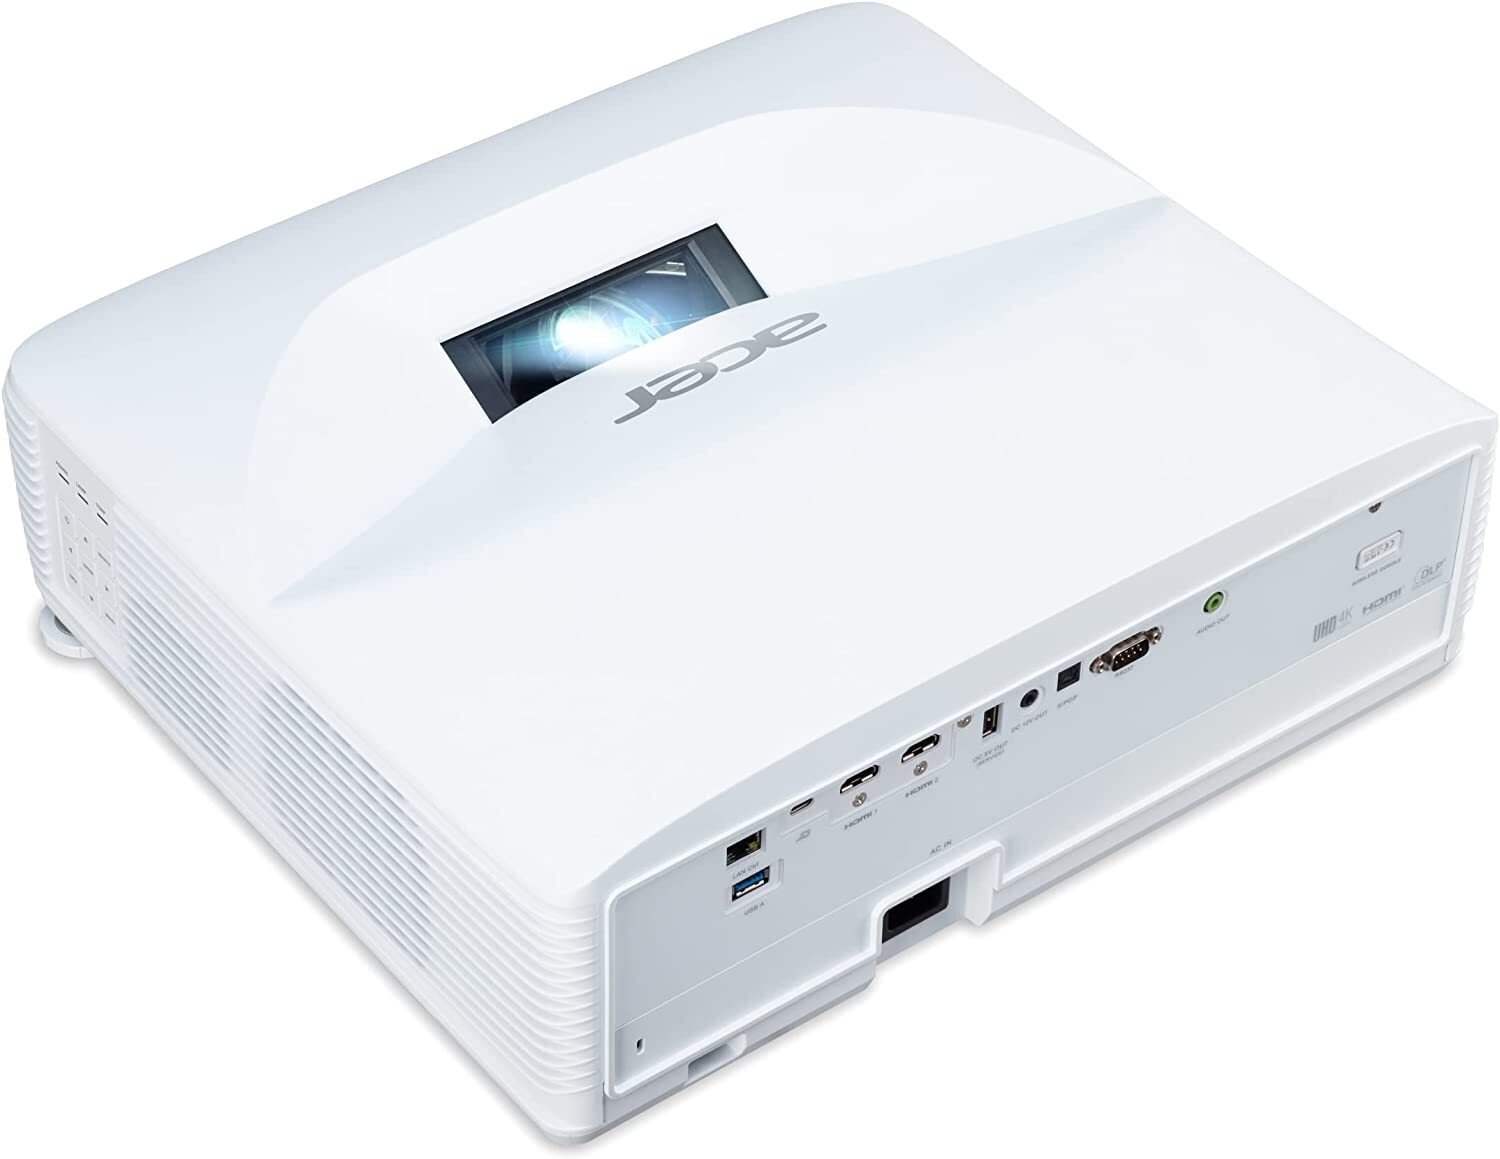 Ультракороткофокусний проектор Acer L811 (DLP, UHD, 3000 lm, LASER) WiFi, Aptoide (MR.JUC11.001)фото4